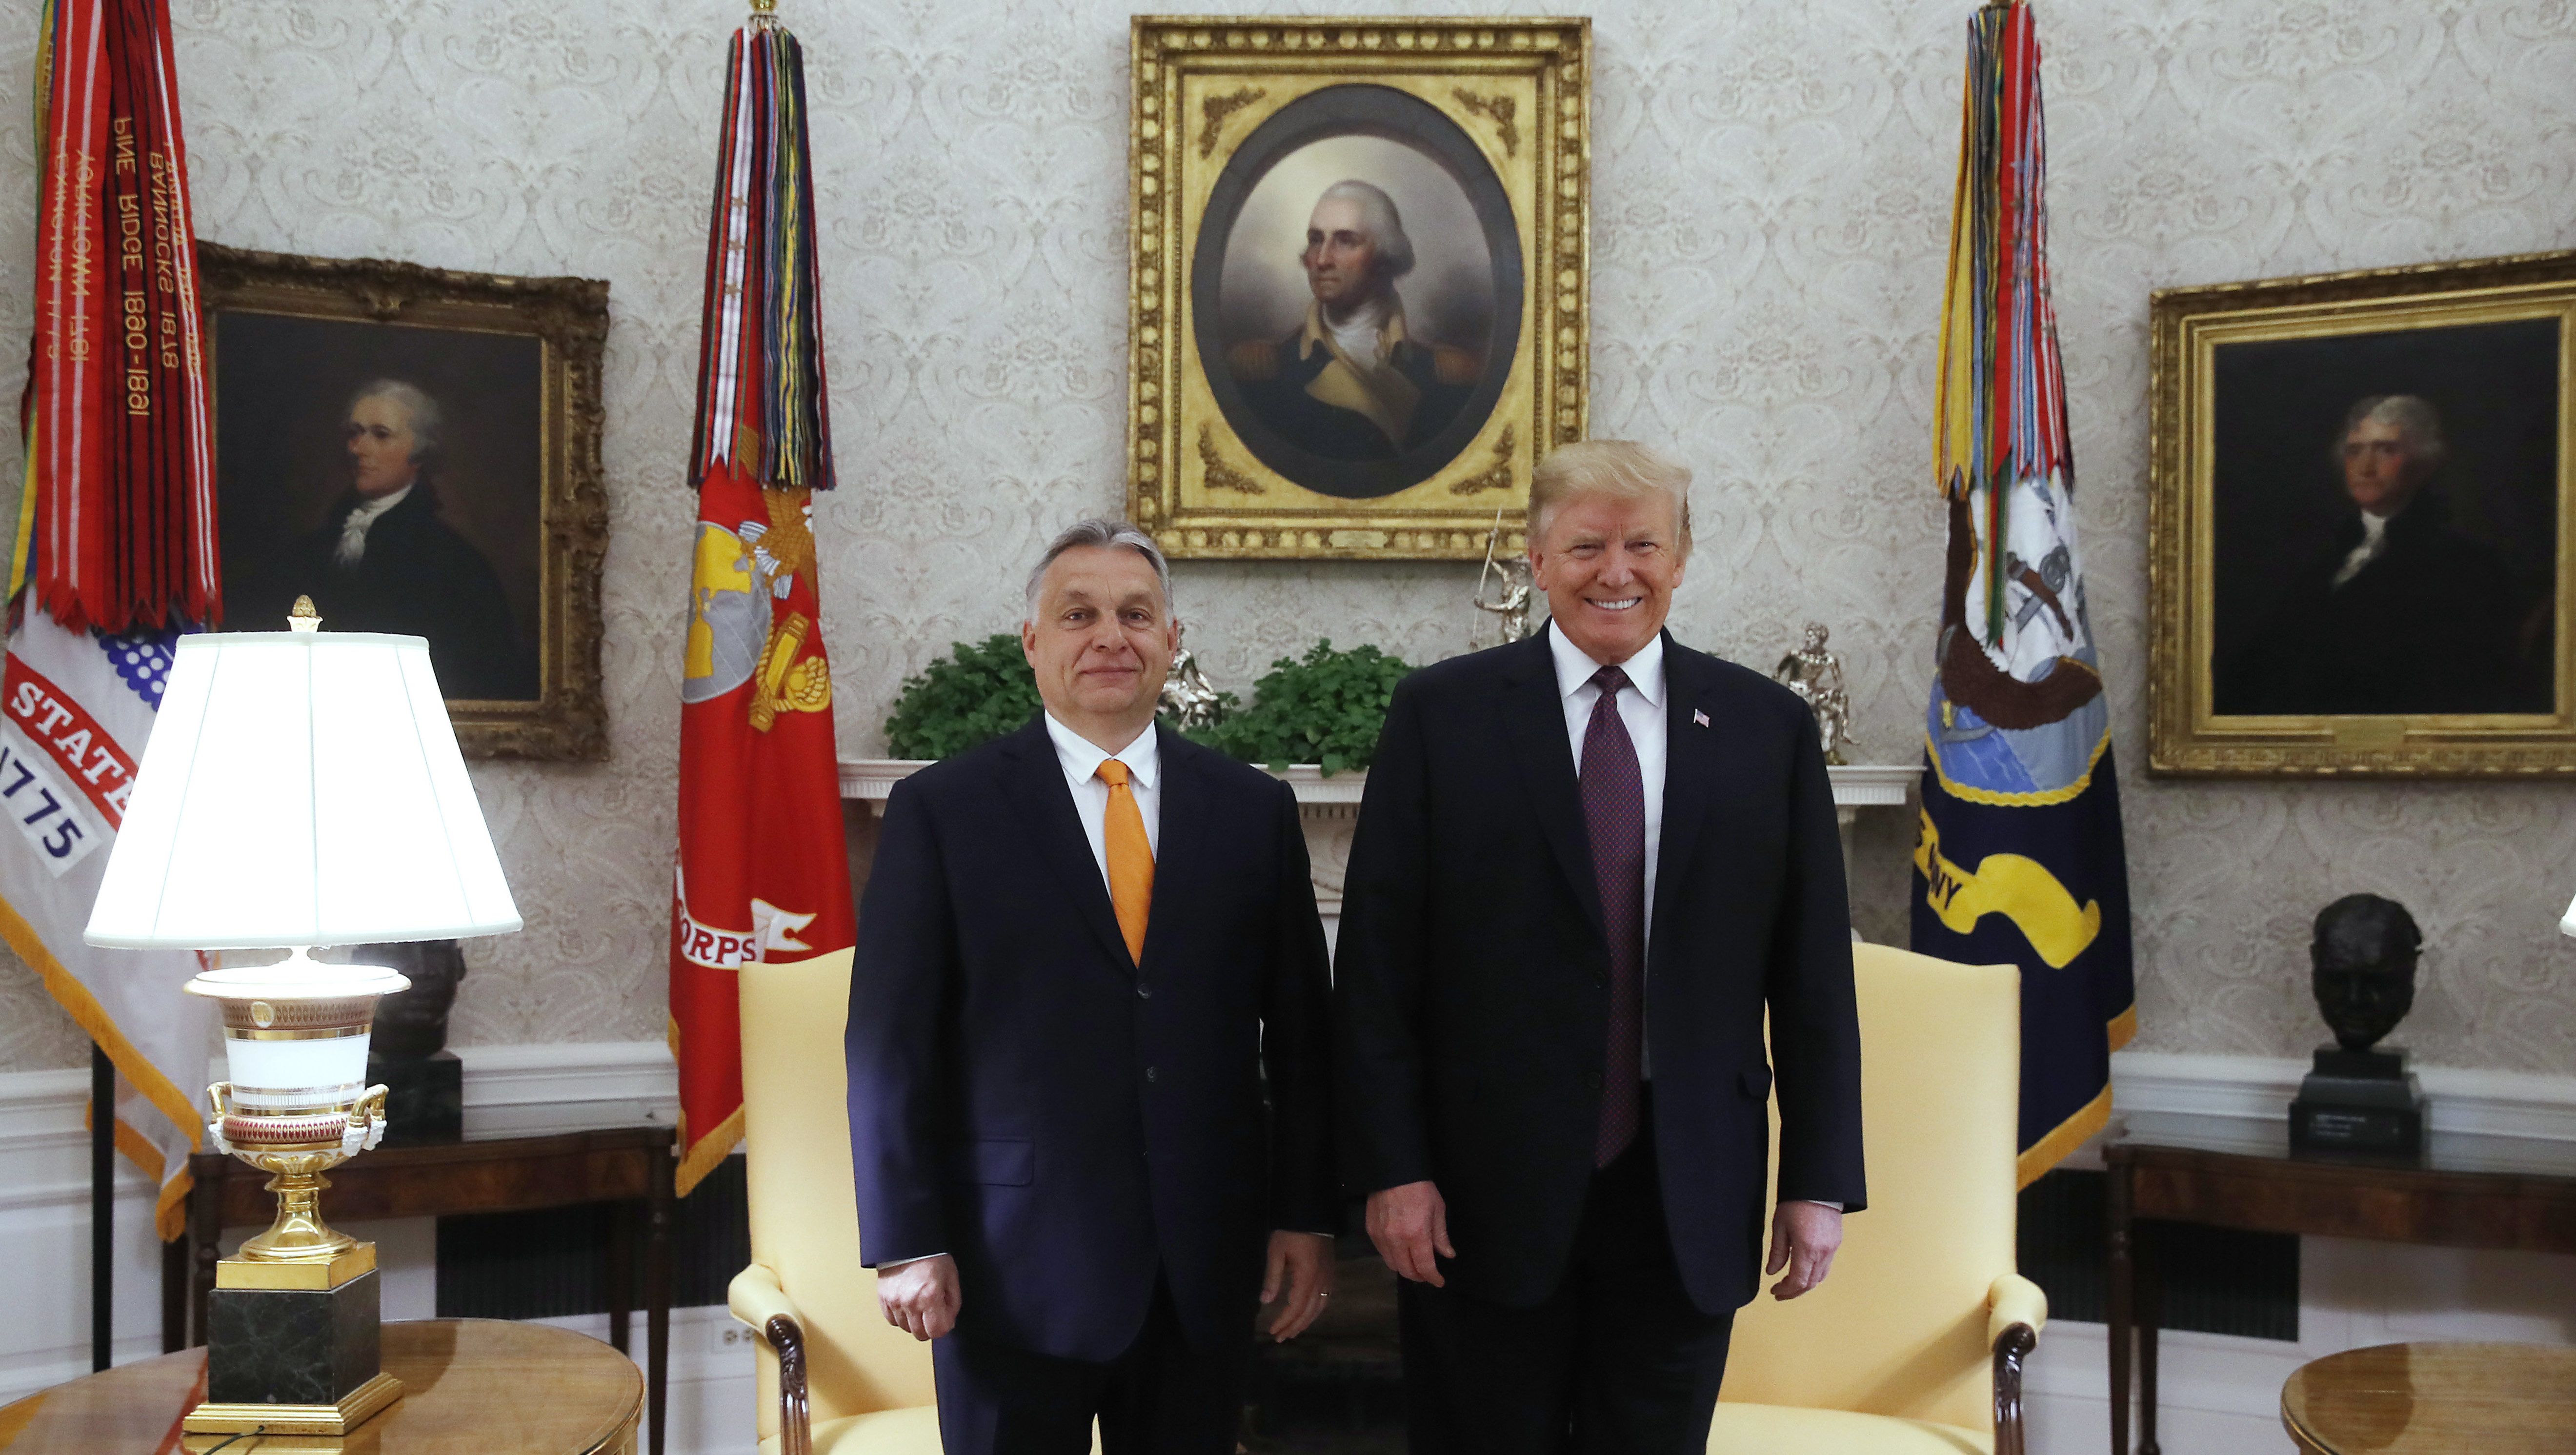 Trump Orbánnak: Olyan, mintha ikrek volnánk